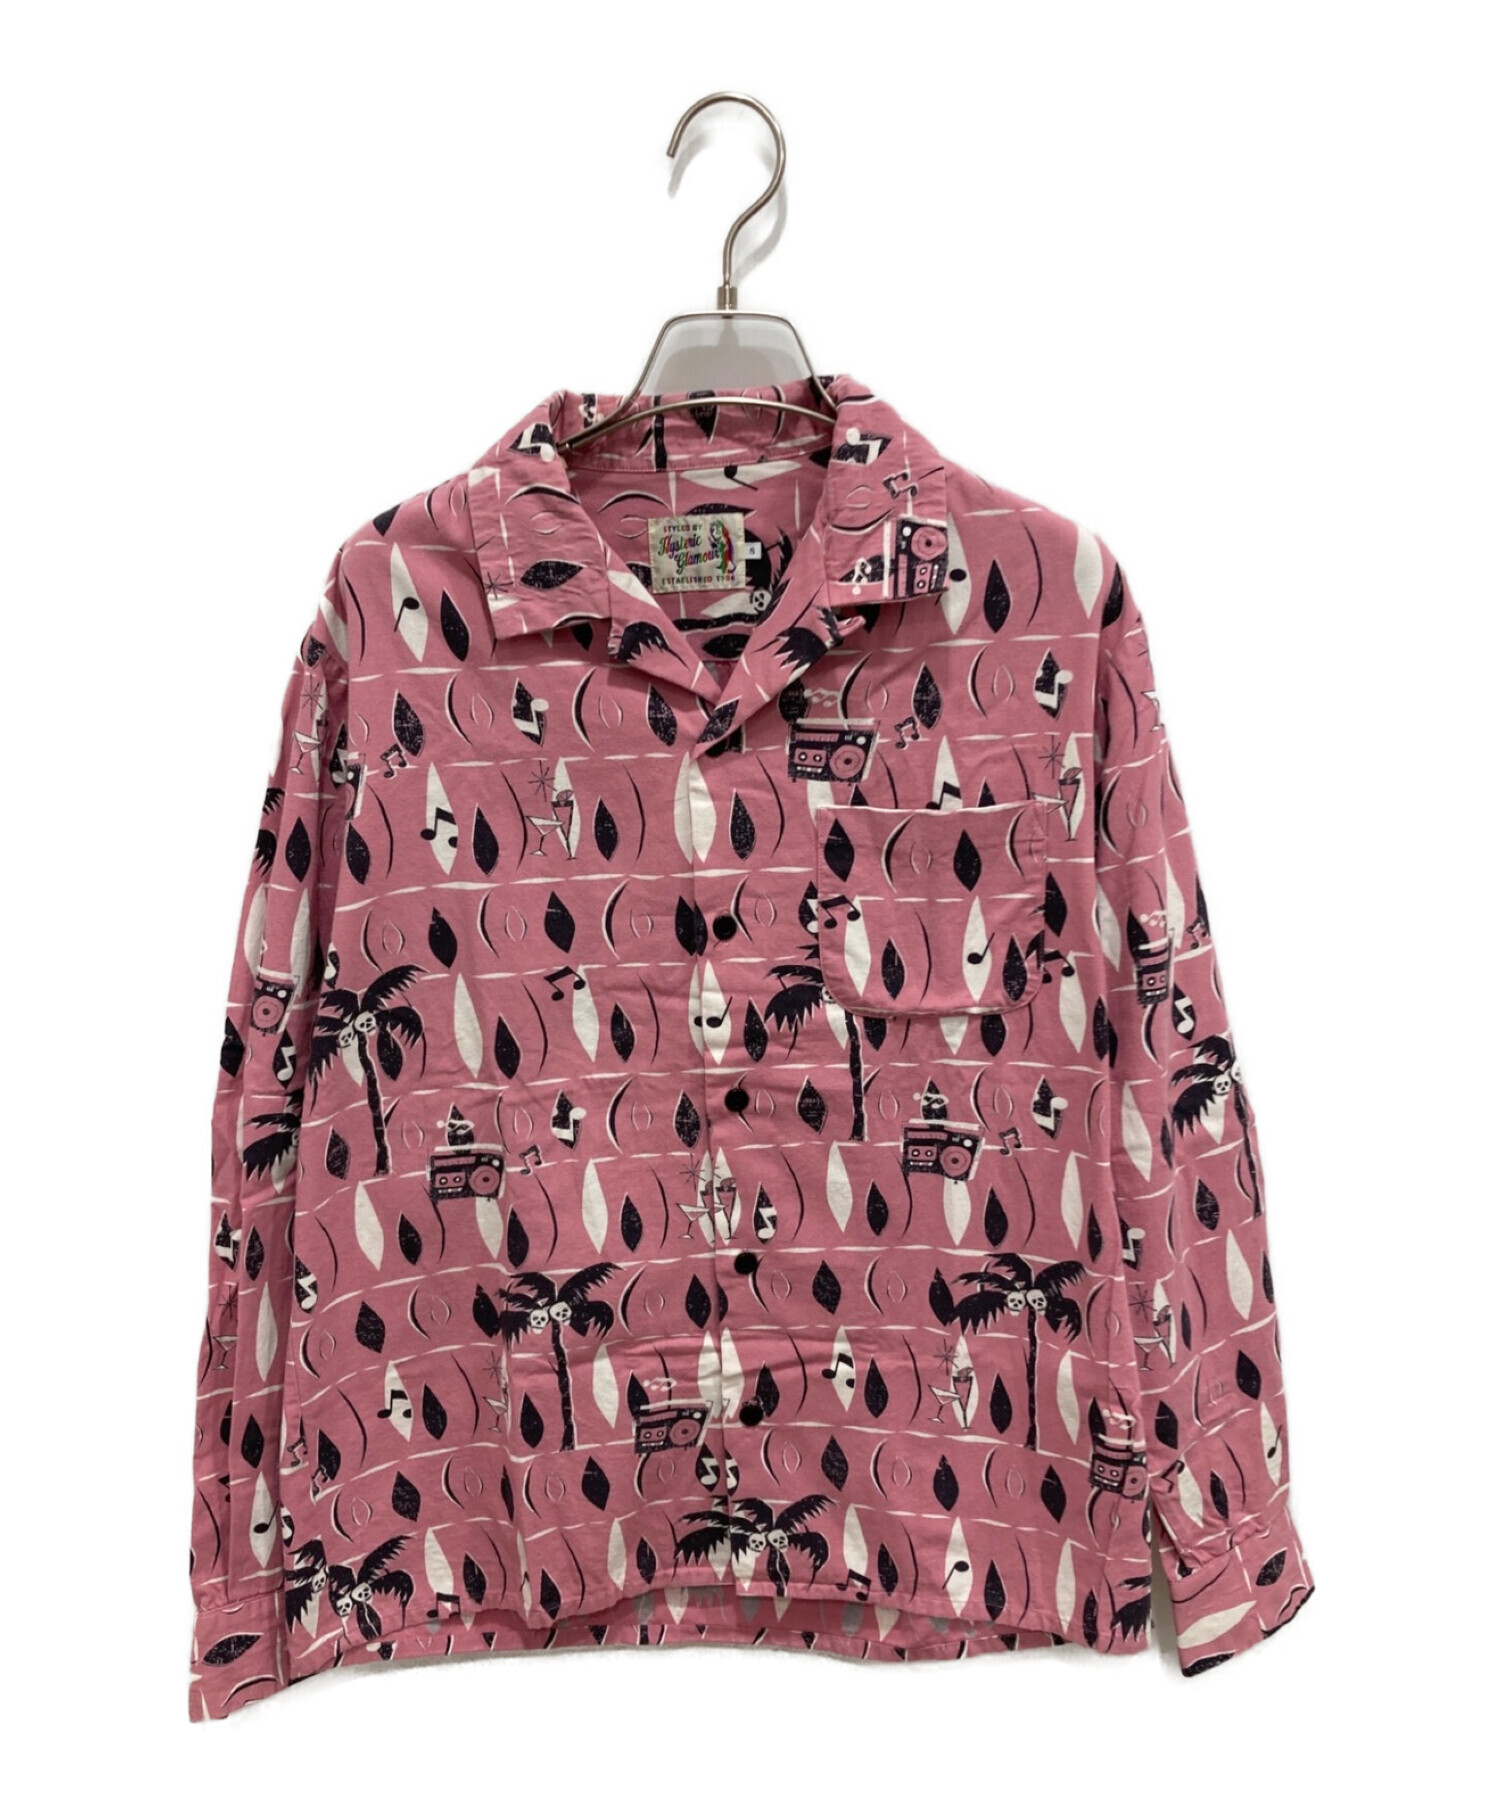 Hysteric Glamour (ヒステリックグラマー) オープンカラーシャツ ピンク サイズ:S